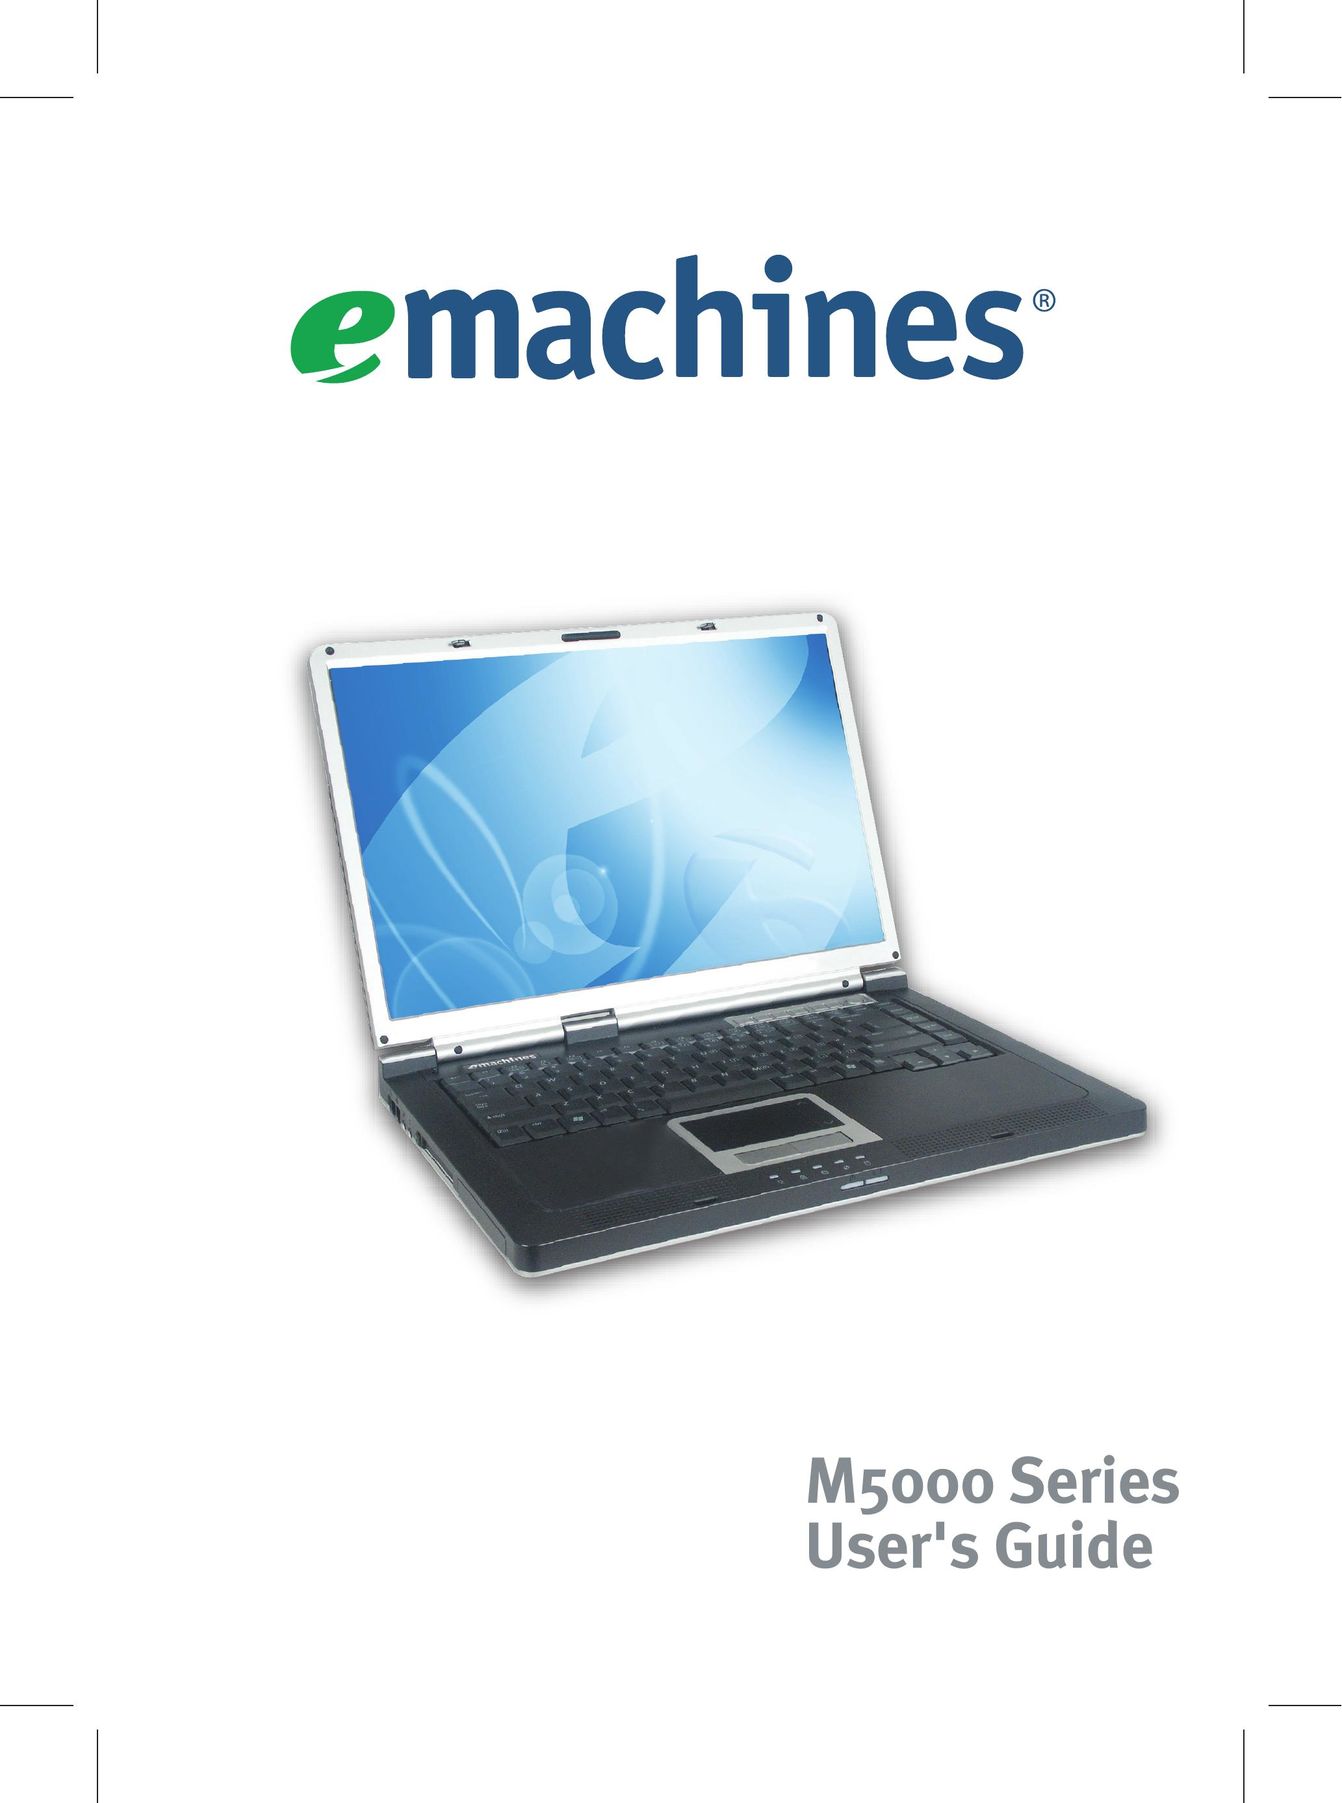 eMachines M5000 Series Laptop User Manual